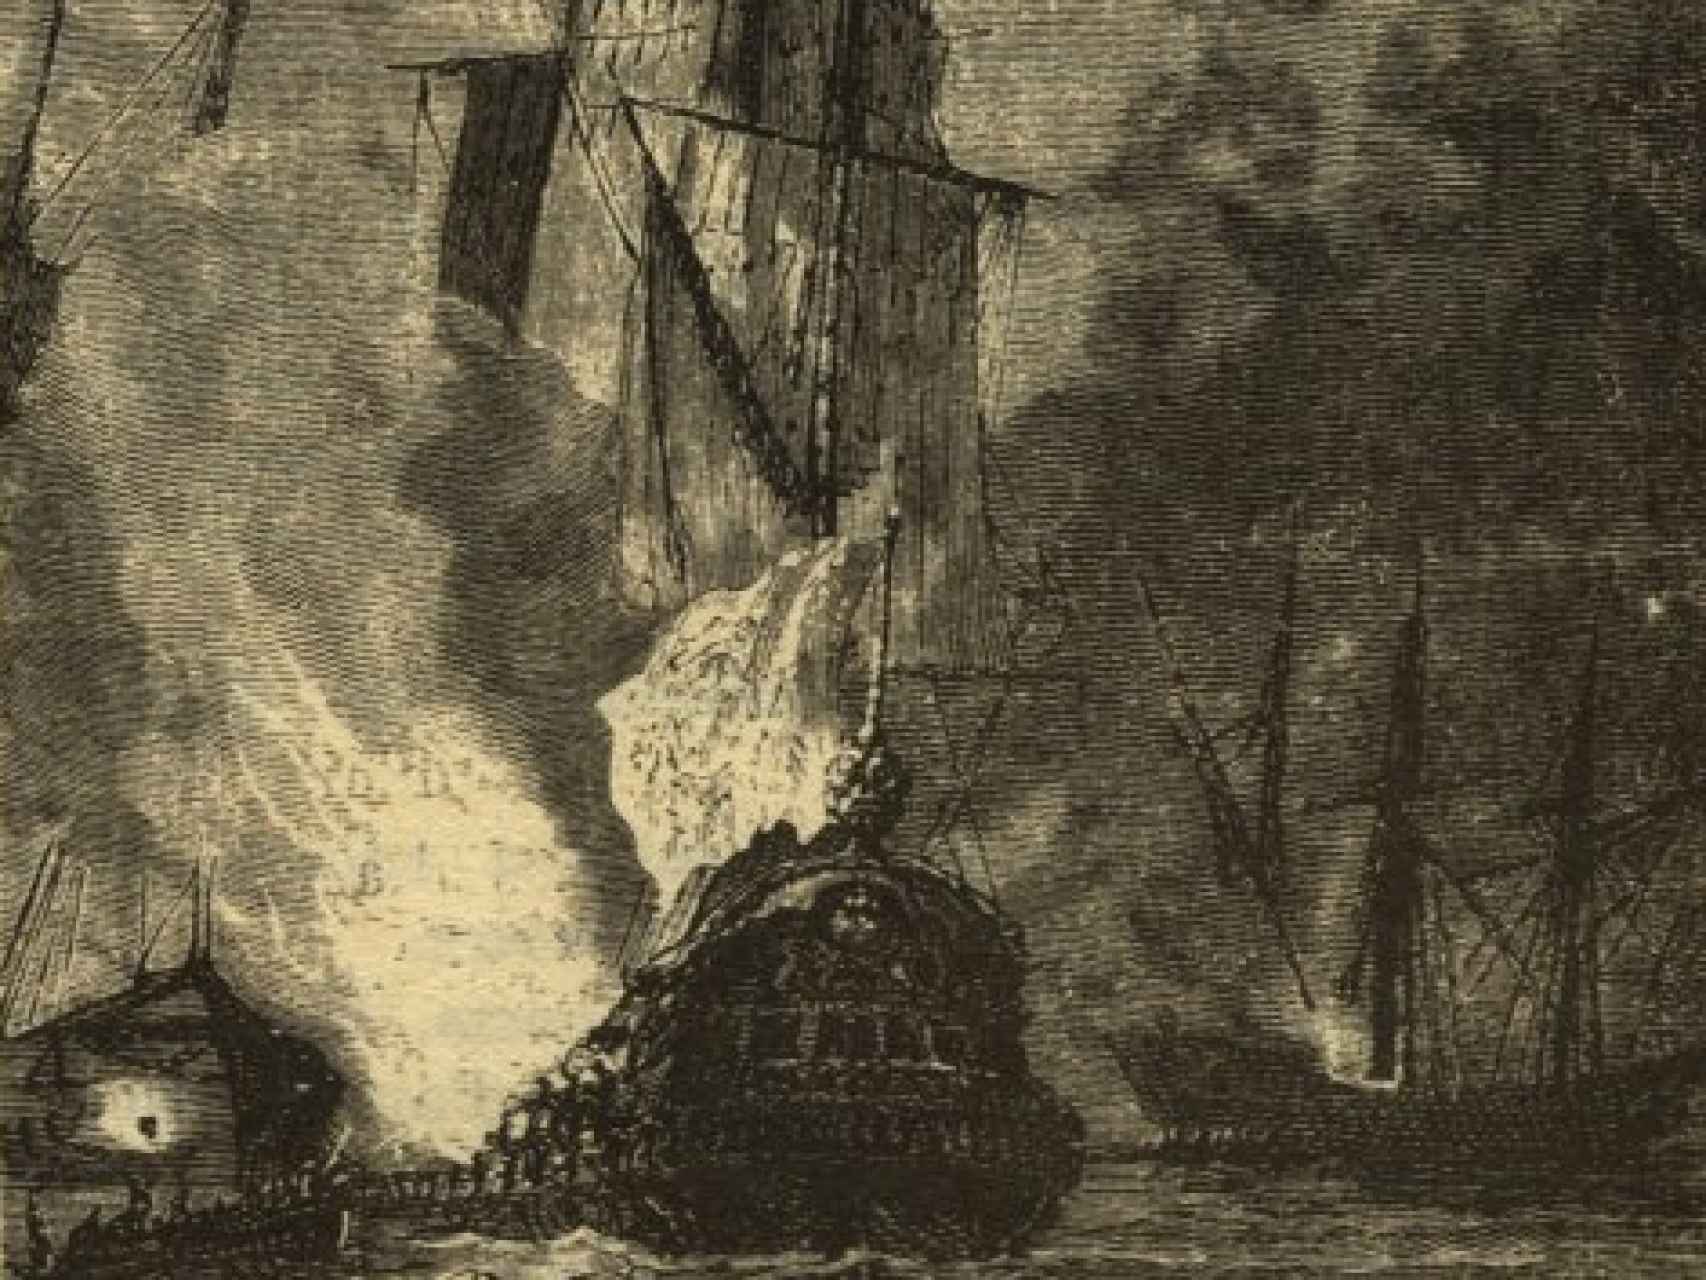 La batalla de Rande, según una ilustración original de 20.000 leguas de viaje submarino, de Julio Verne (1869)